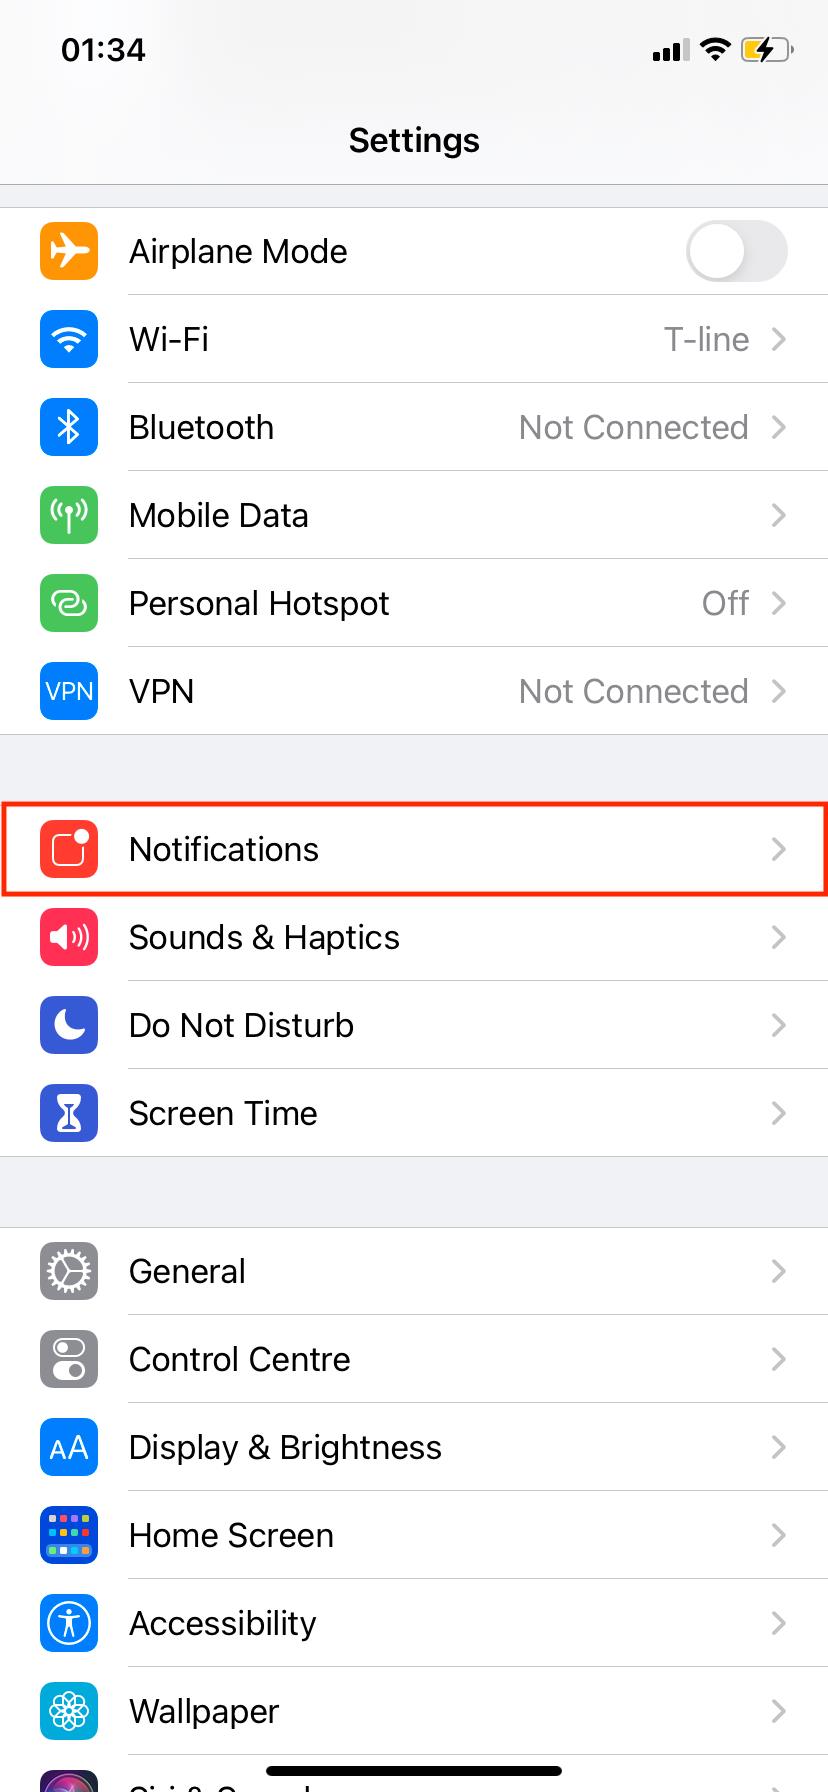 Cómo desactivar el tiempo de pantalla en iPhone y Mac